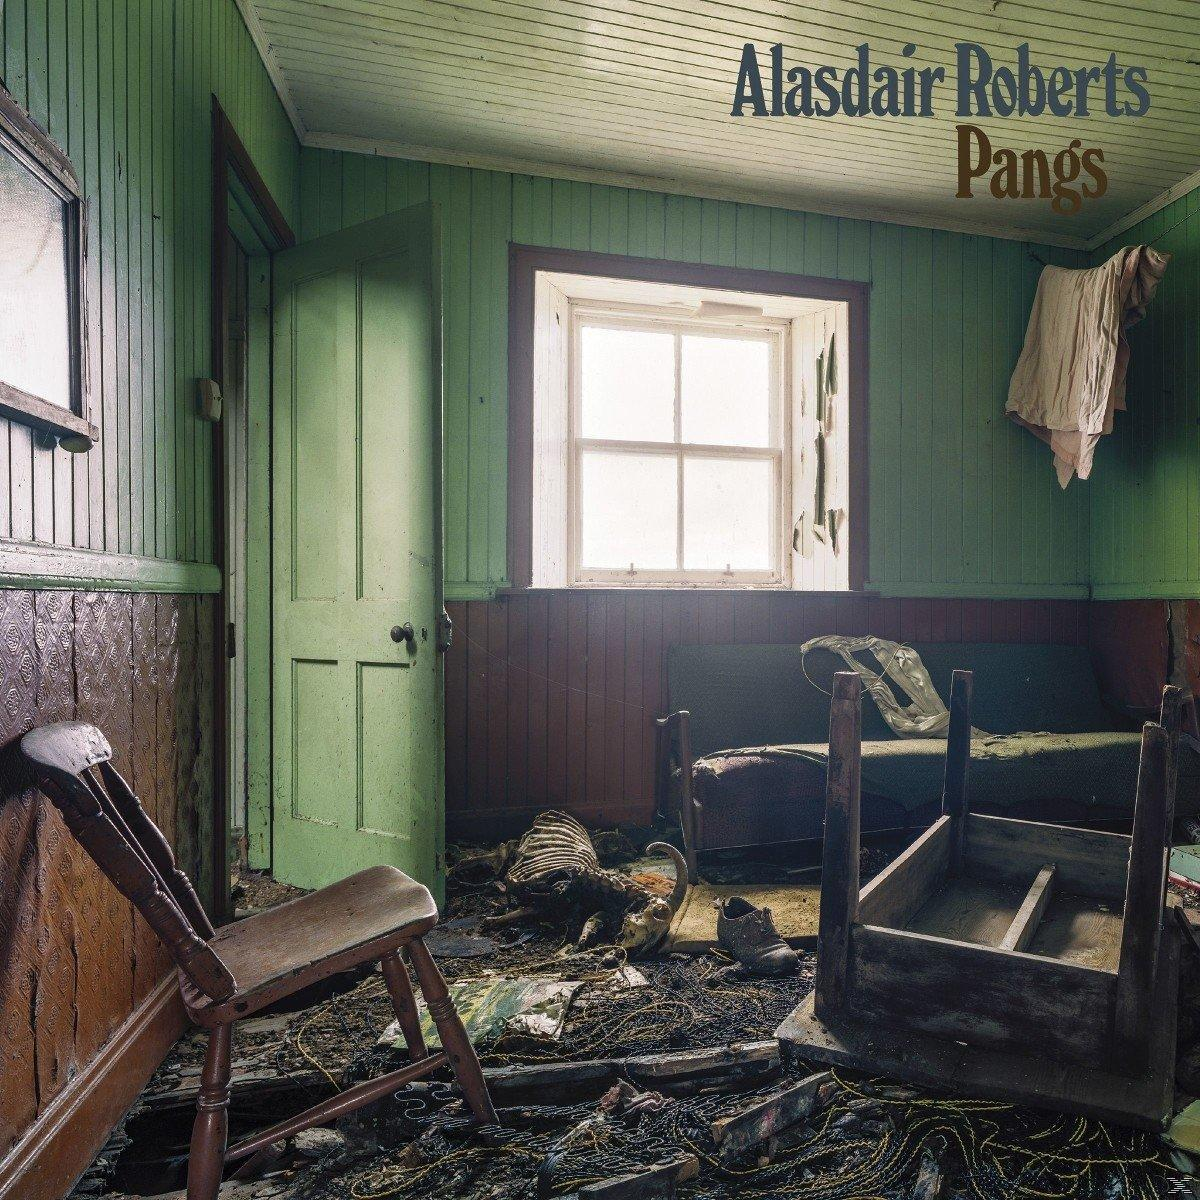 Roberts (CD) - - Alasdair Pangs